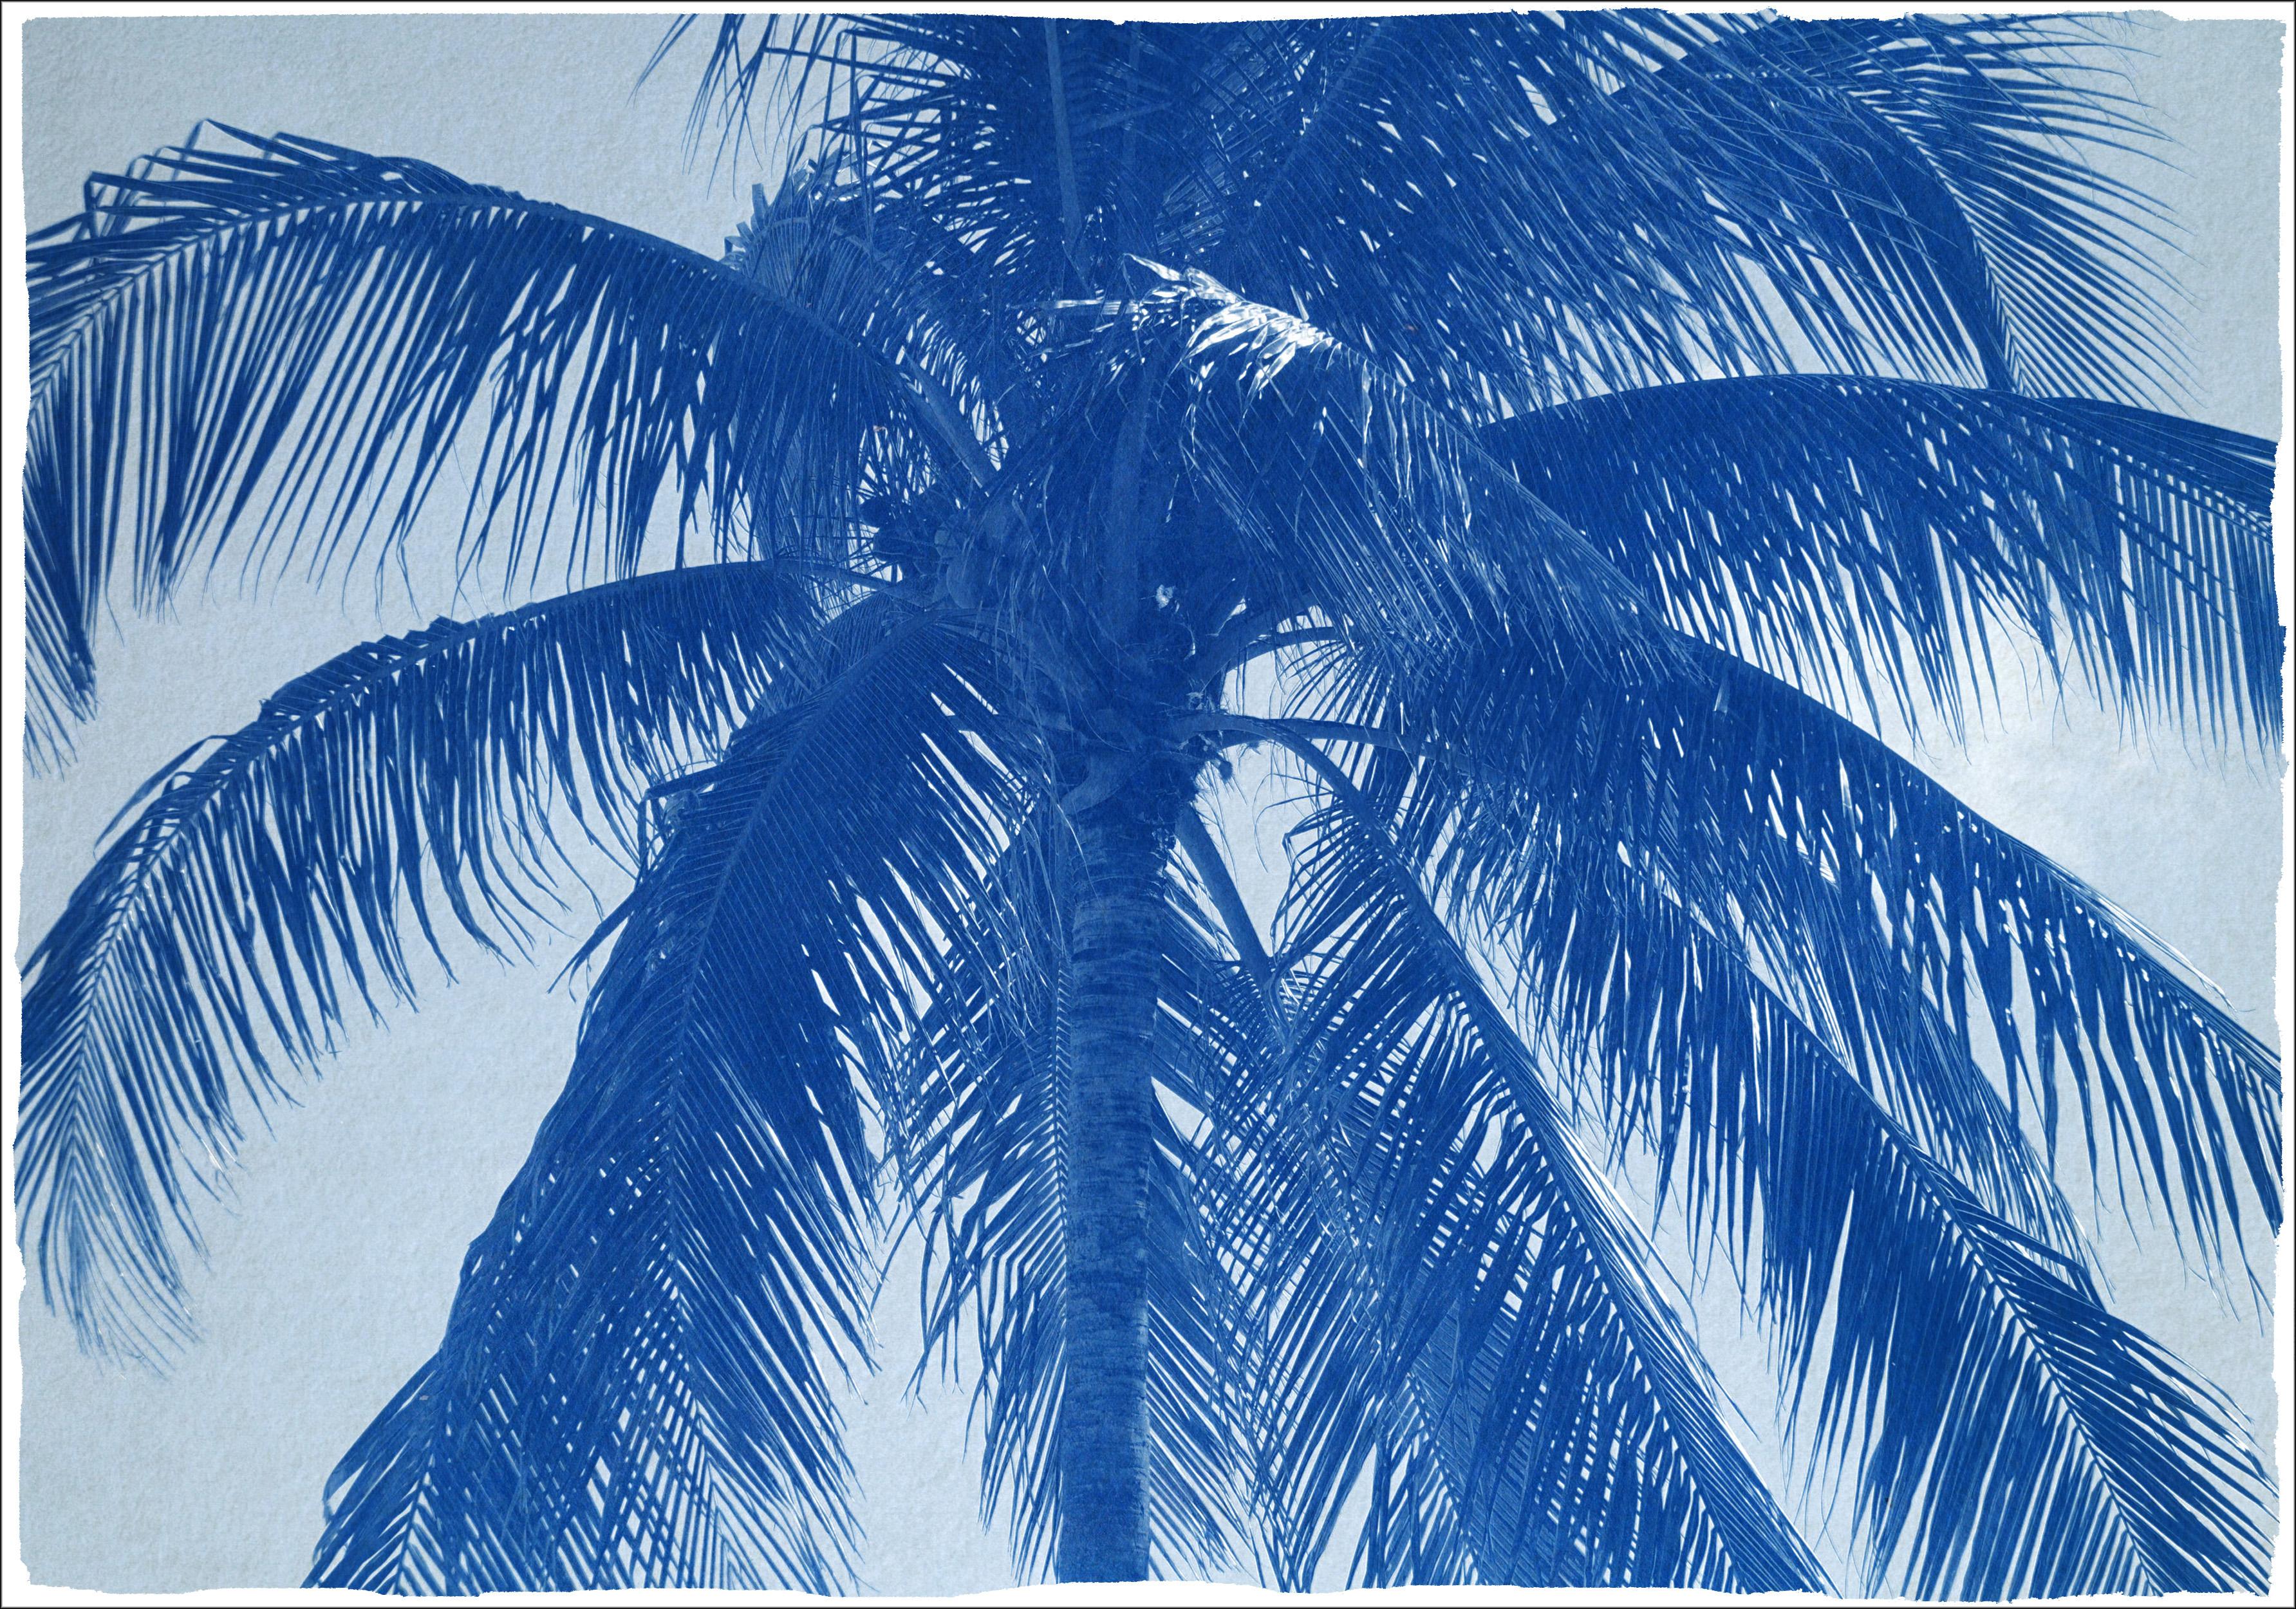 Coconut- Palmenbaum, großer botanischer Druck, tropischer Stil in Blautönen, limitiert